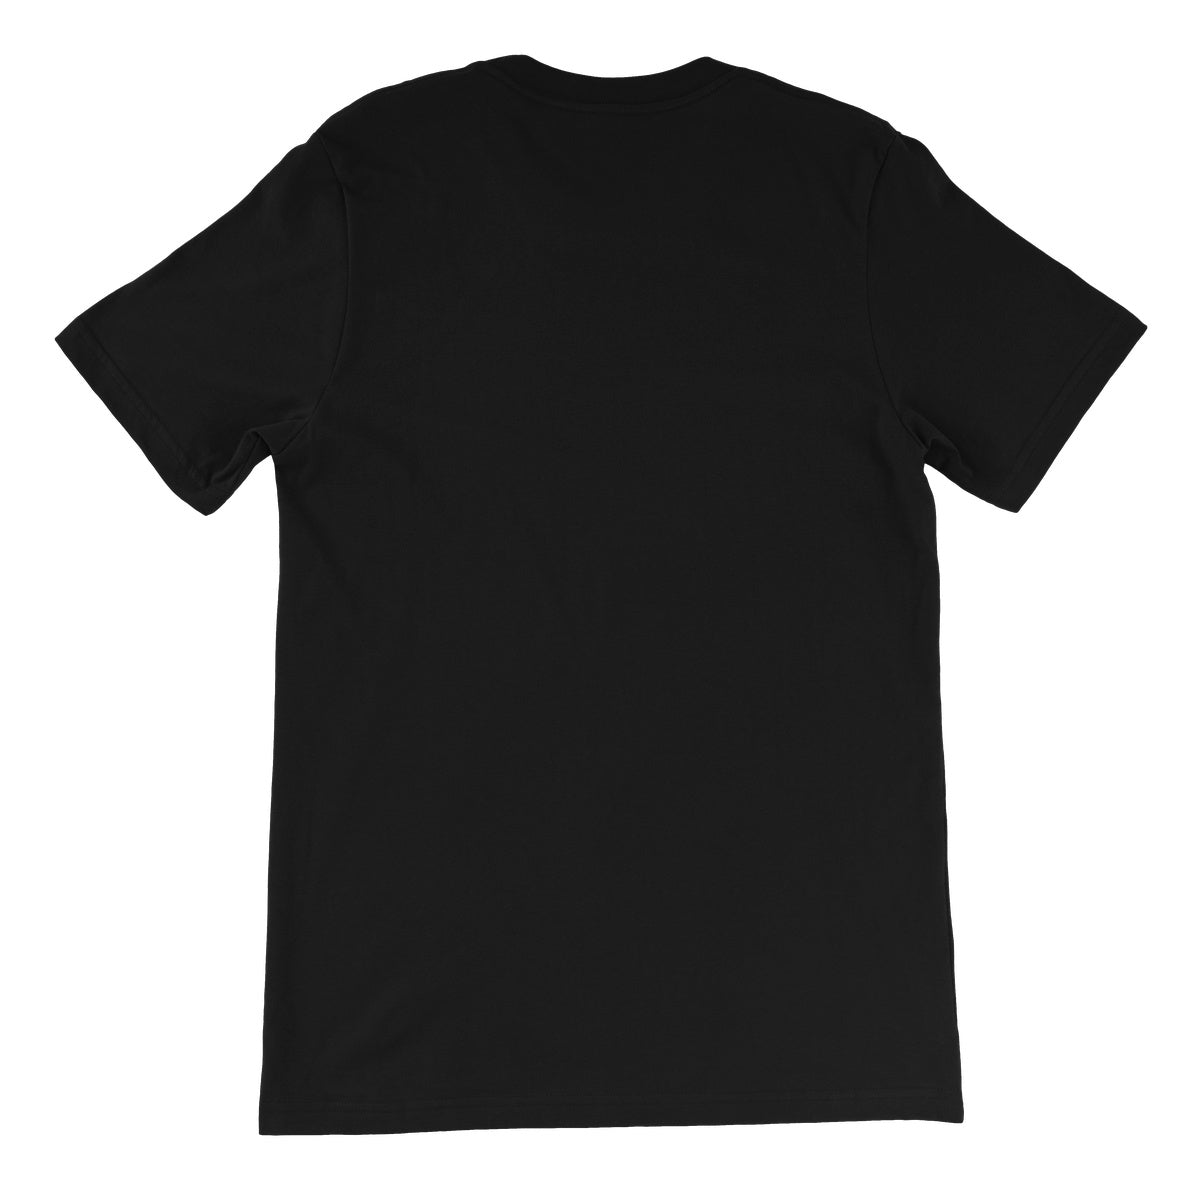 Bound For Glory 2020 - Logo Unisex Short Sleeve T-Shirt